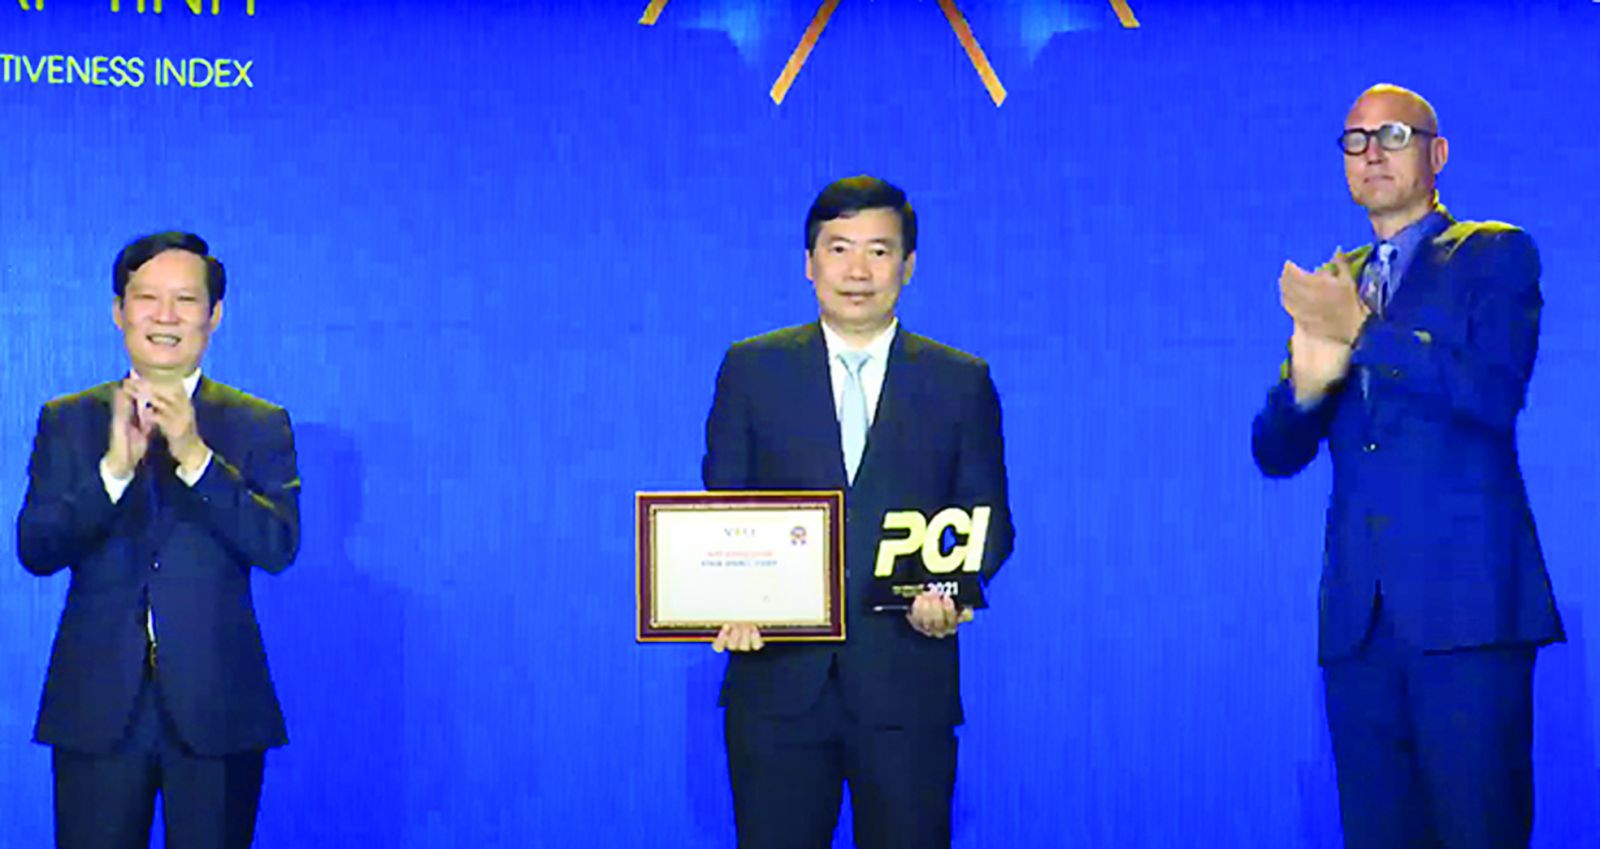  Chủ tịch UBND tỉnh Đồng Tháp Phạm Thiện Nghĩa nhận kỷ niệm chương tại Lễ công bố chỉ số PCI 2021.